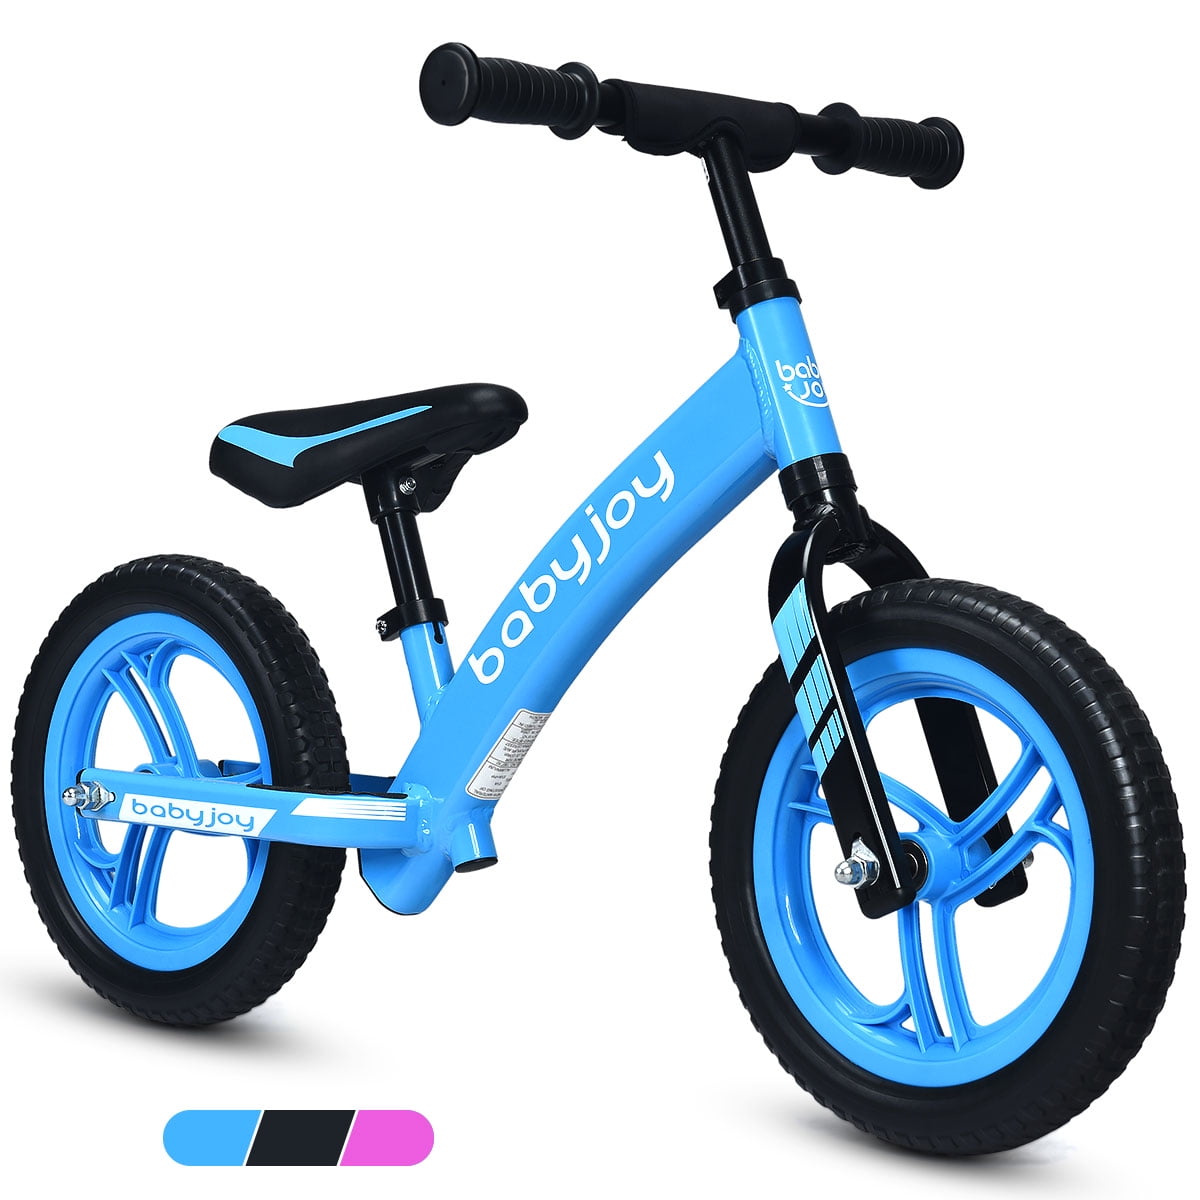 Adjustable Handlebar & Seat Lightweight Wa 12'' Kids Balance Bike without Pedal 